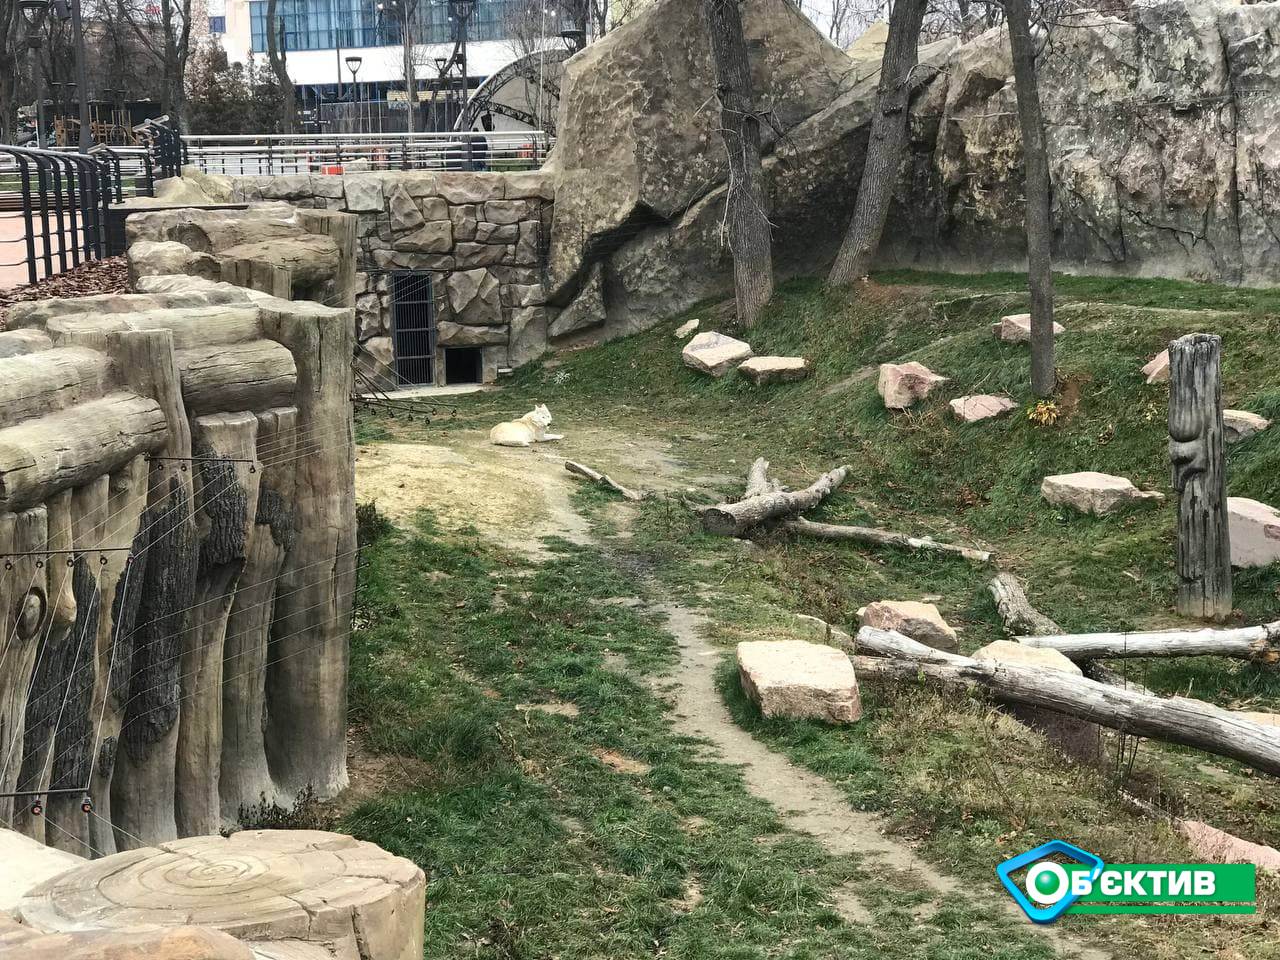 Как работаем Харьковский зоопарк через 100 дней после открытия 